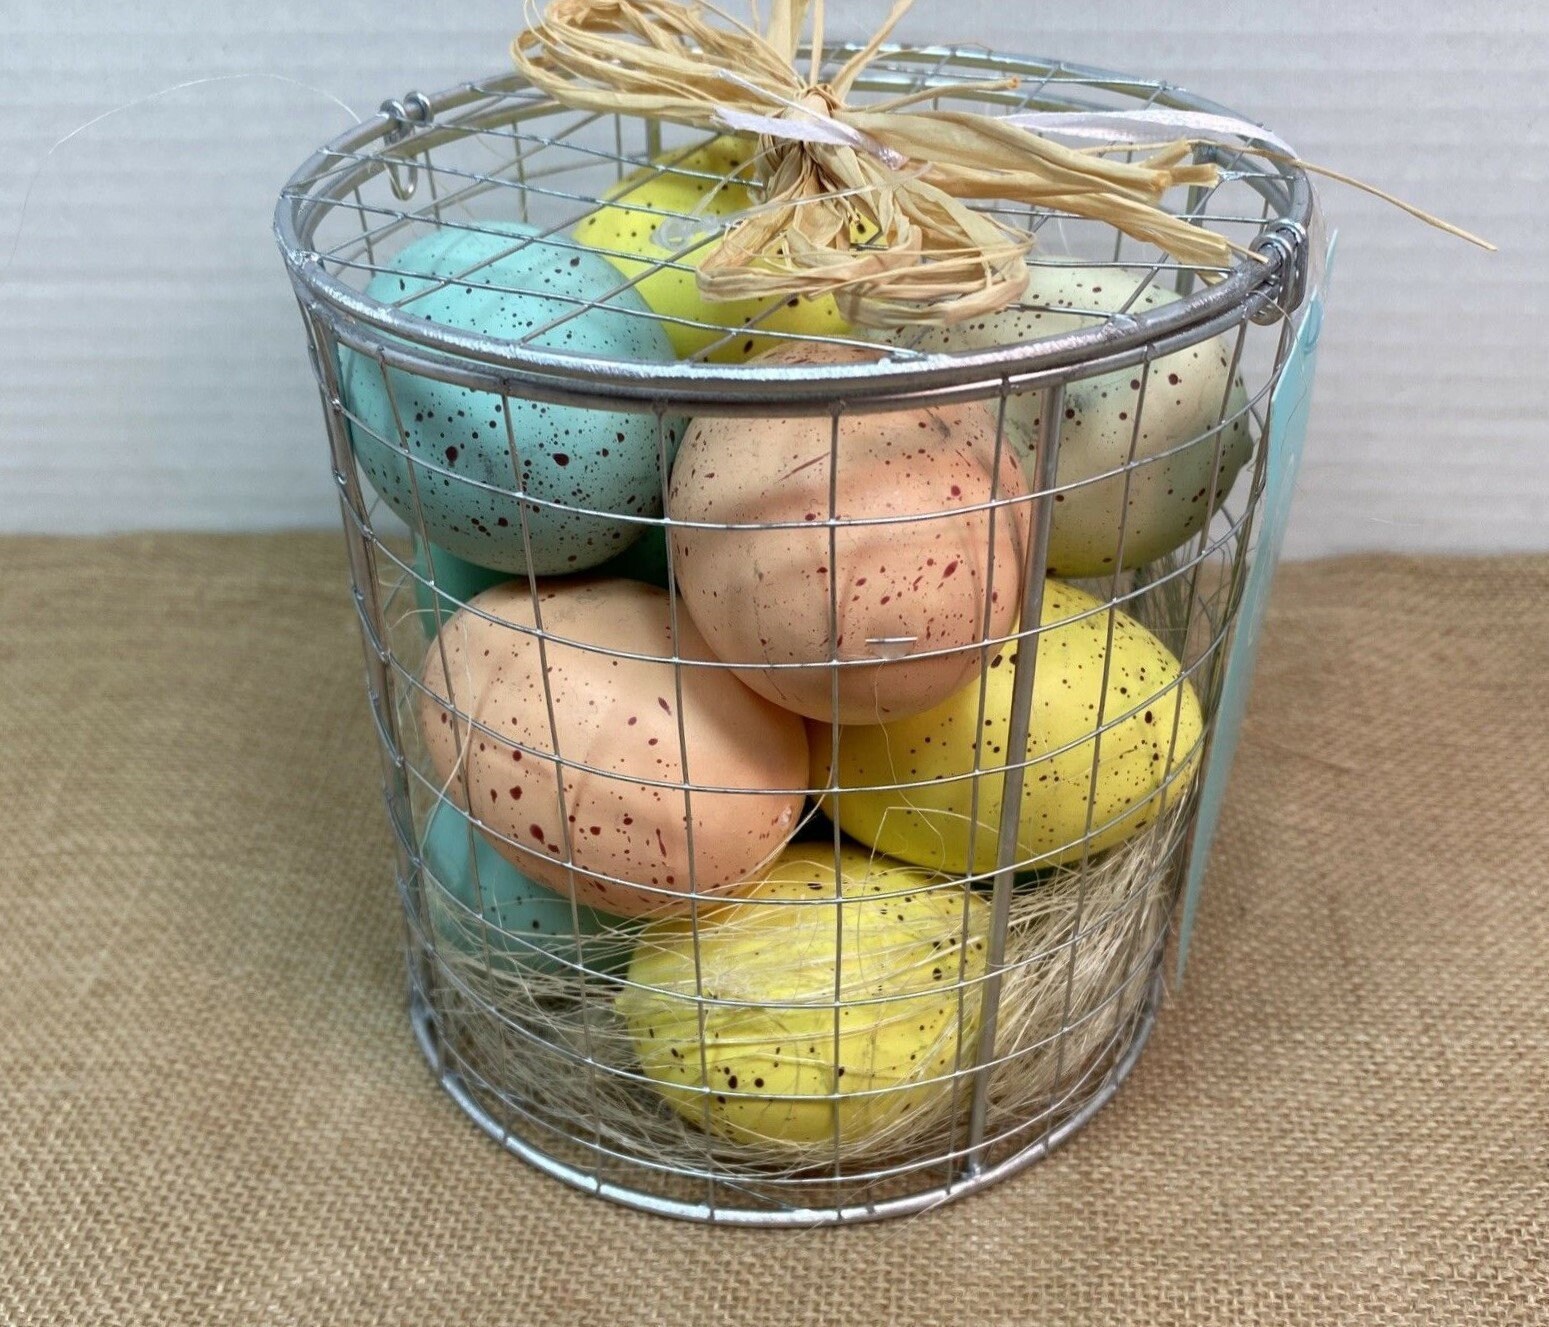 Easter Pastel Speckled Carton of Eggs Basket Bowl Filler Decor 12pcs